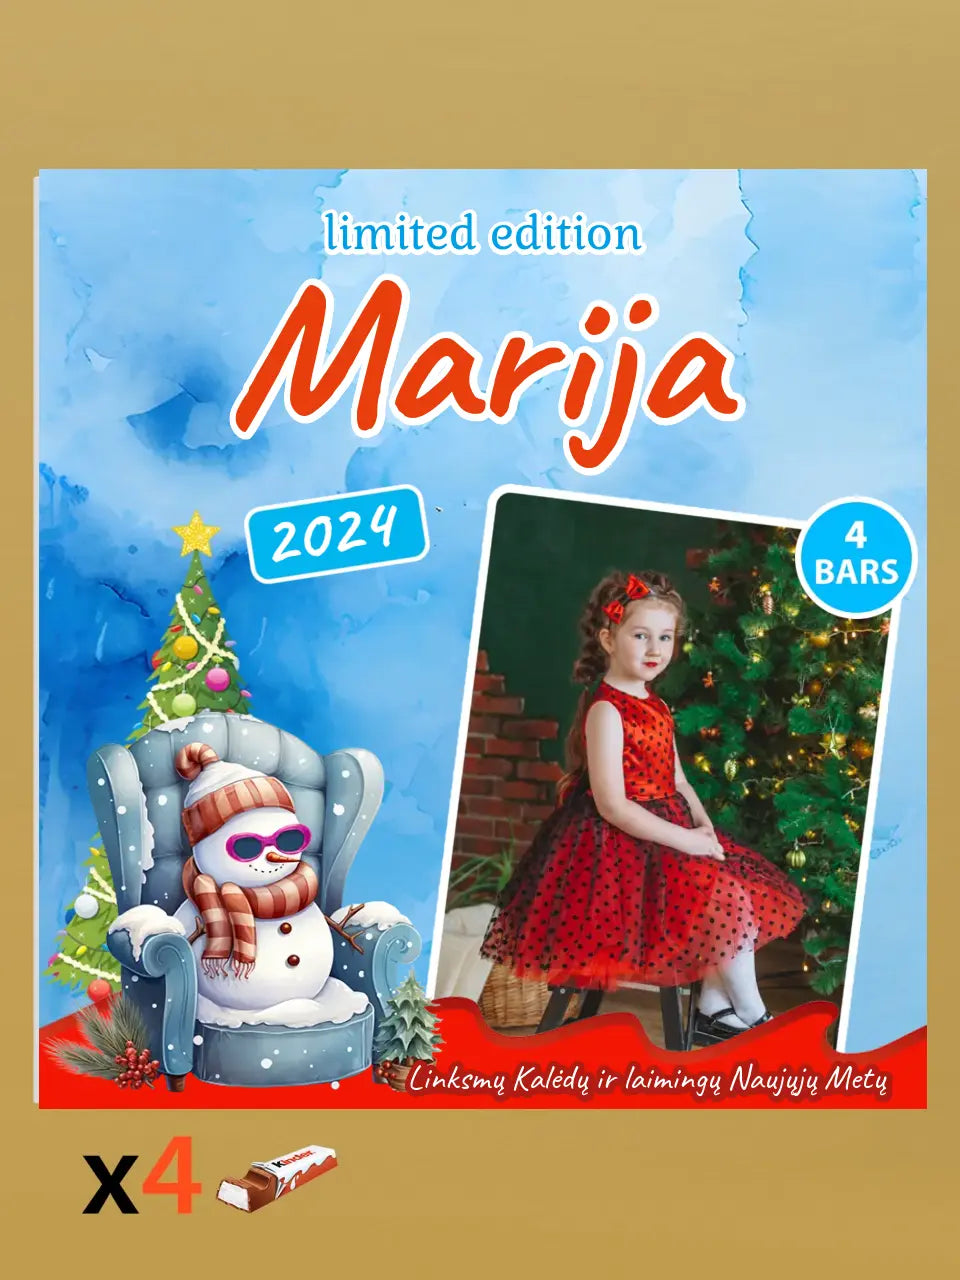 Personalizuota Kinder 4 batonėlių šokoladinė dėžutė su jūsų nuotrauka, Kalėdinė versija su bosu sniego seneliu